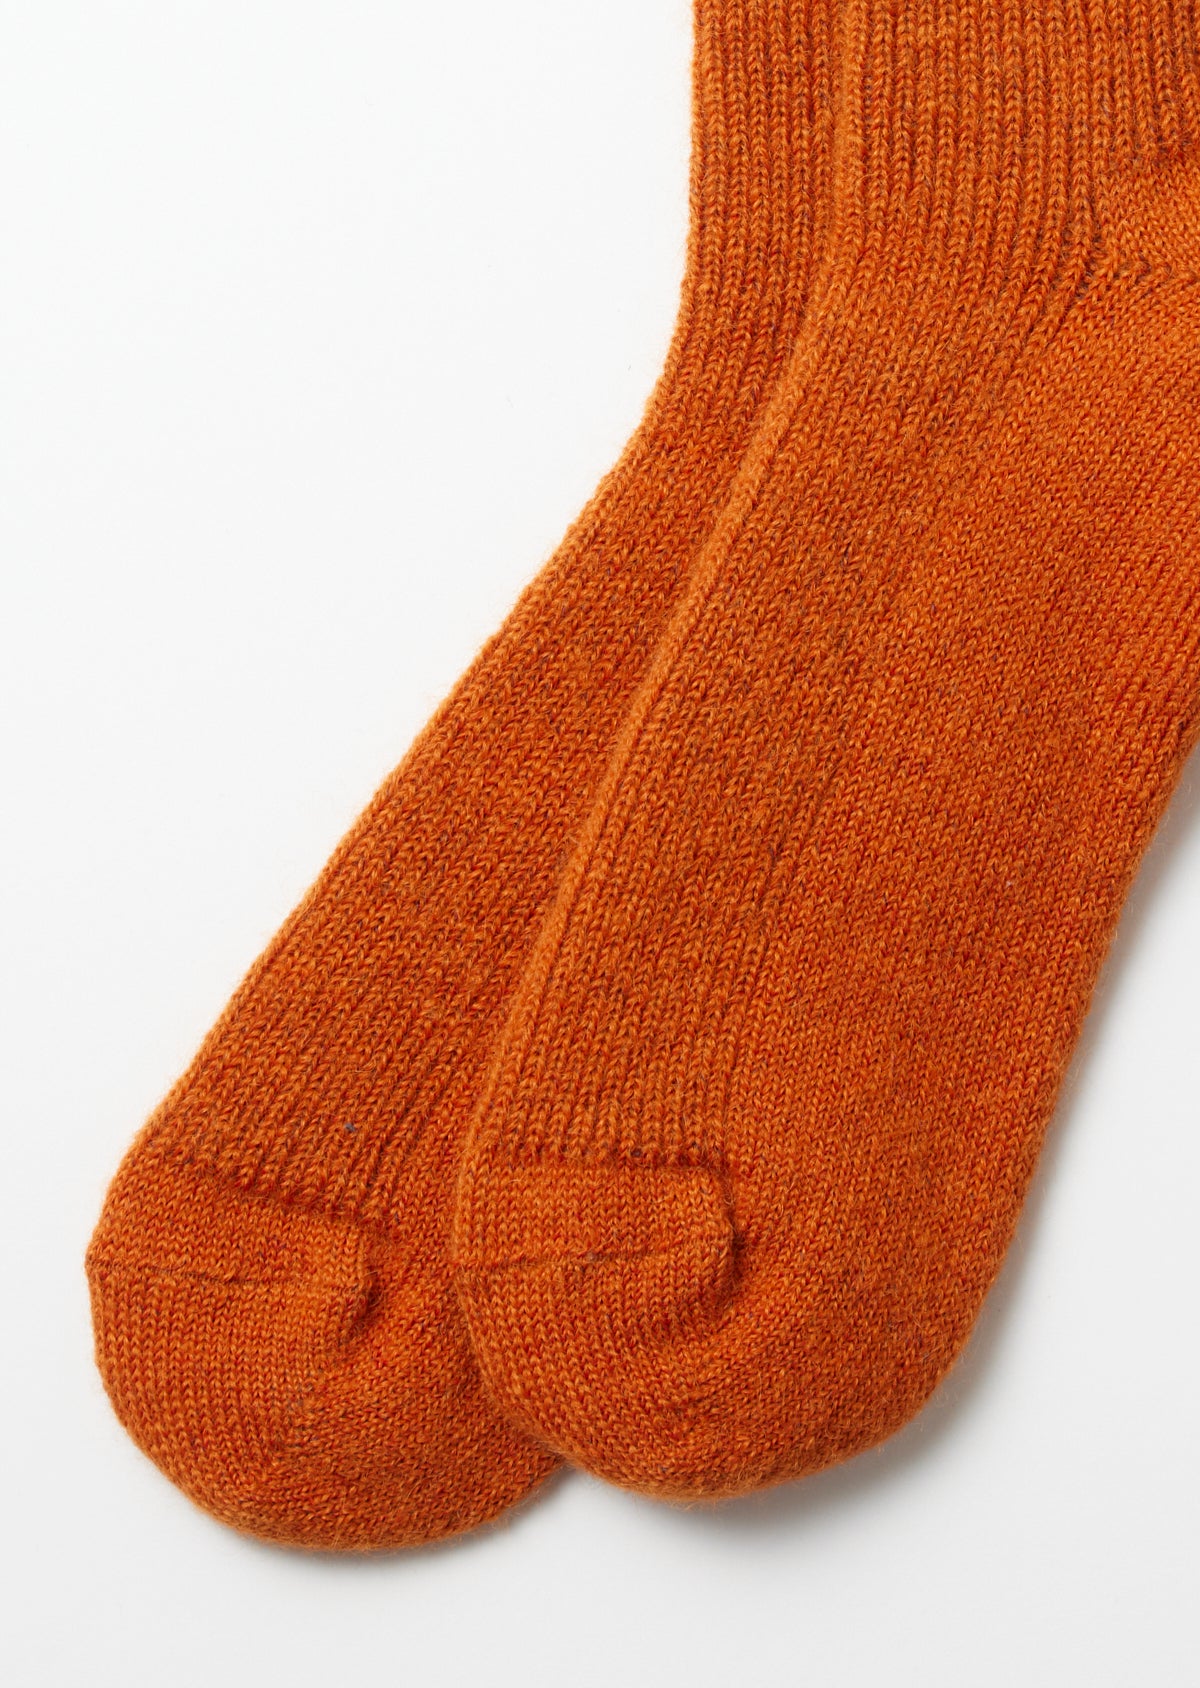 Gewalkte Mohair Socken - orange